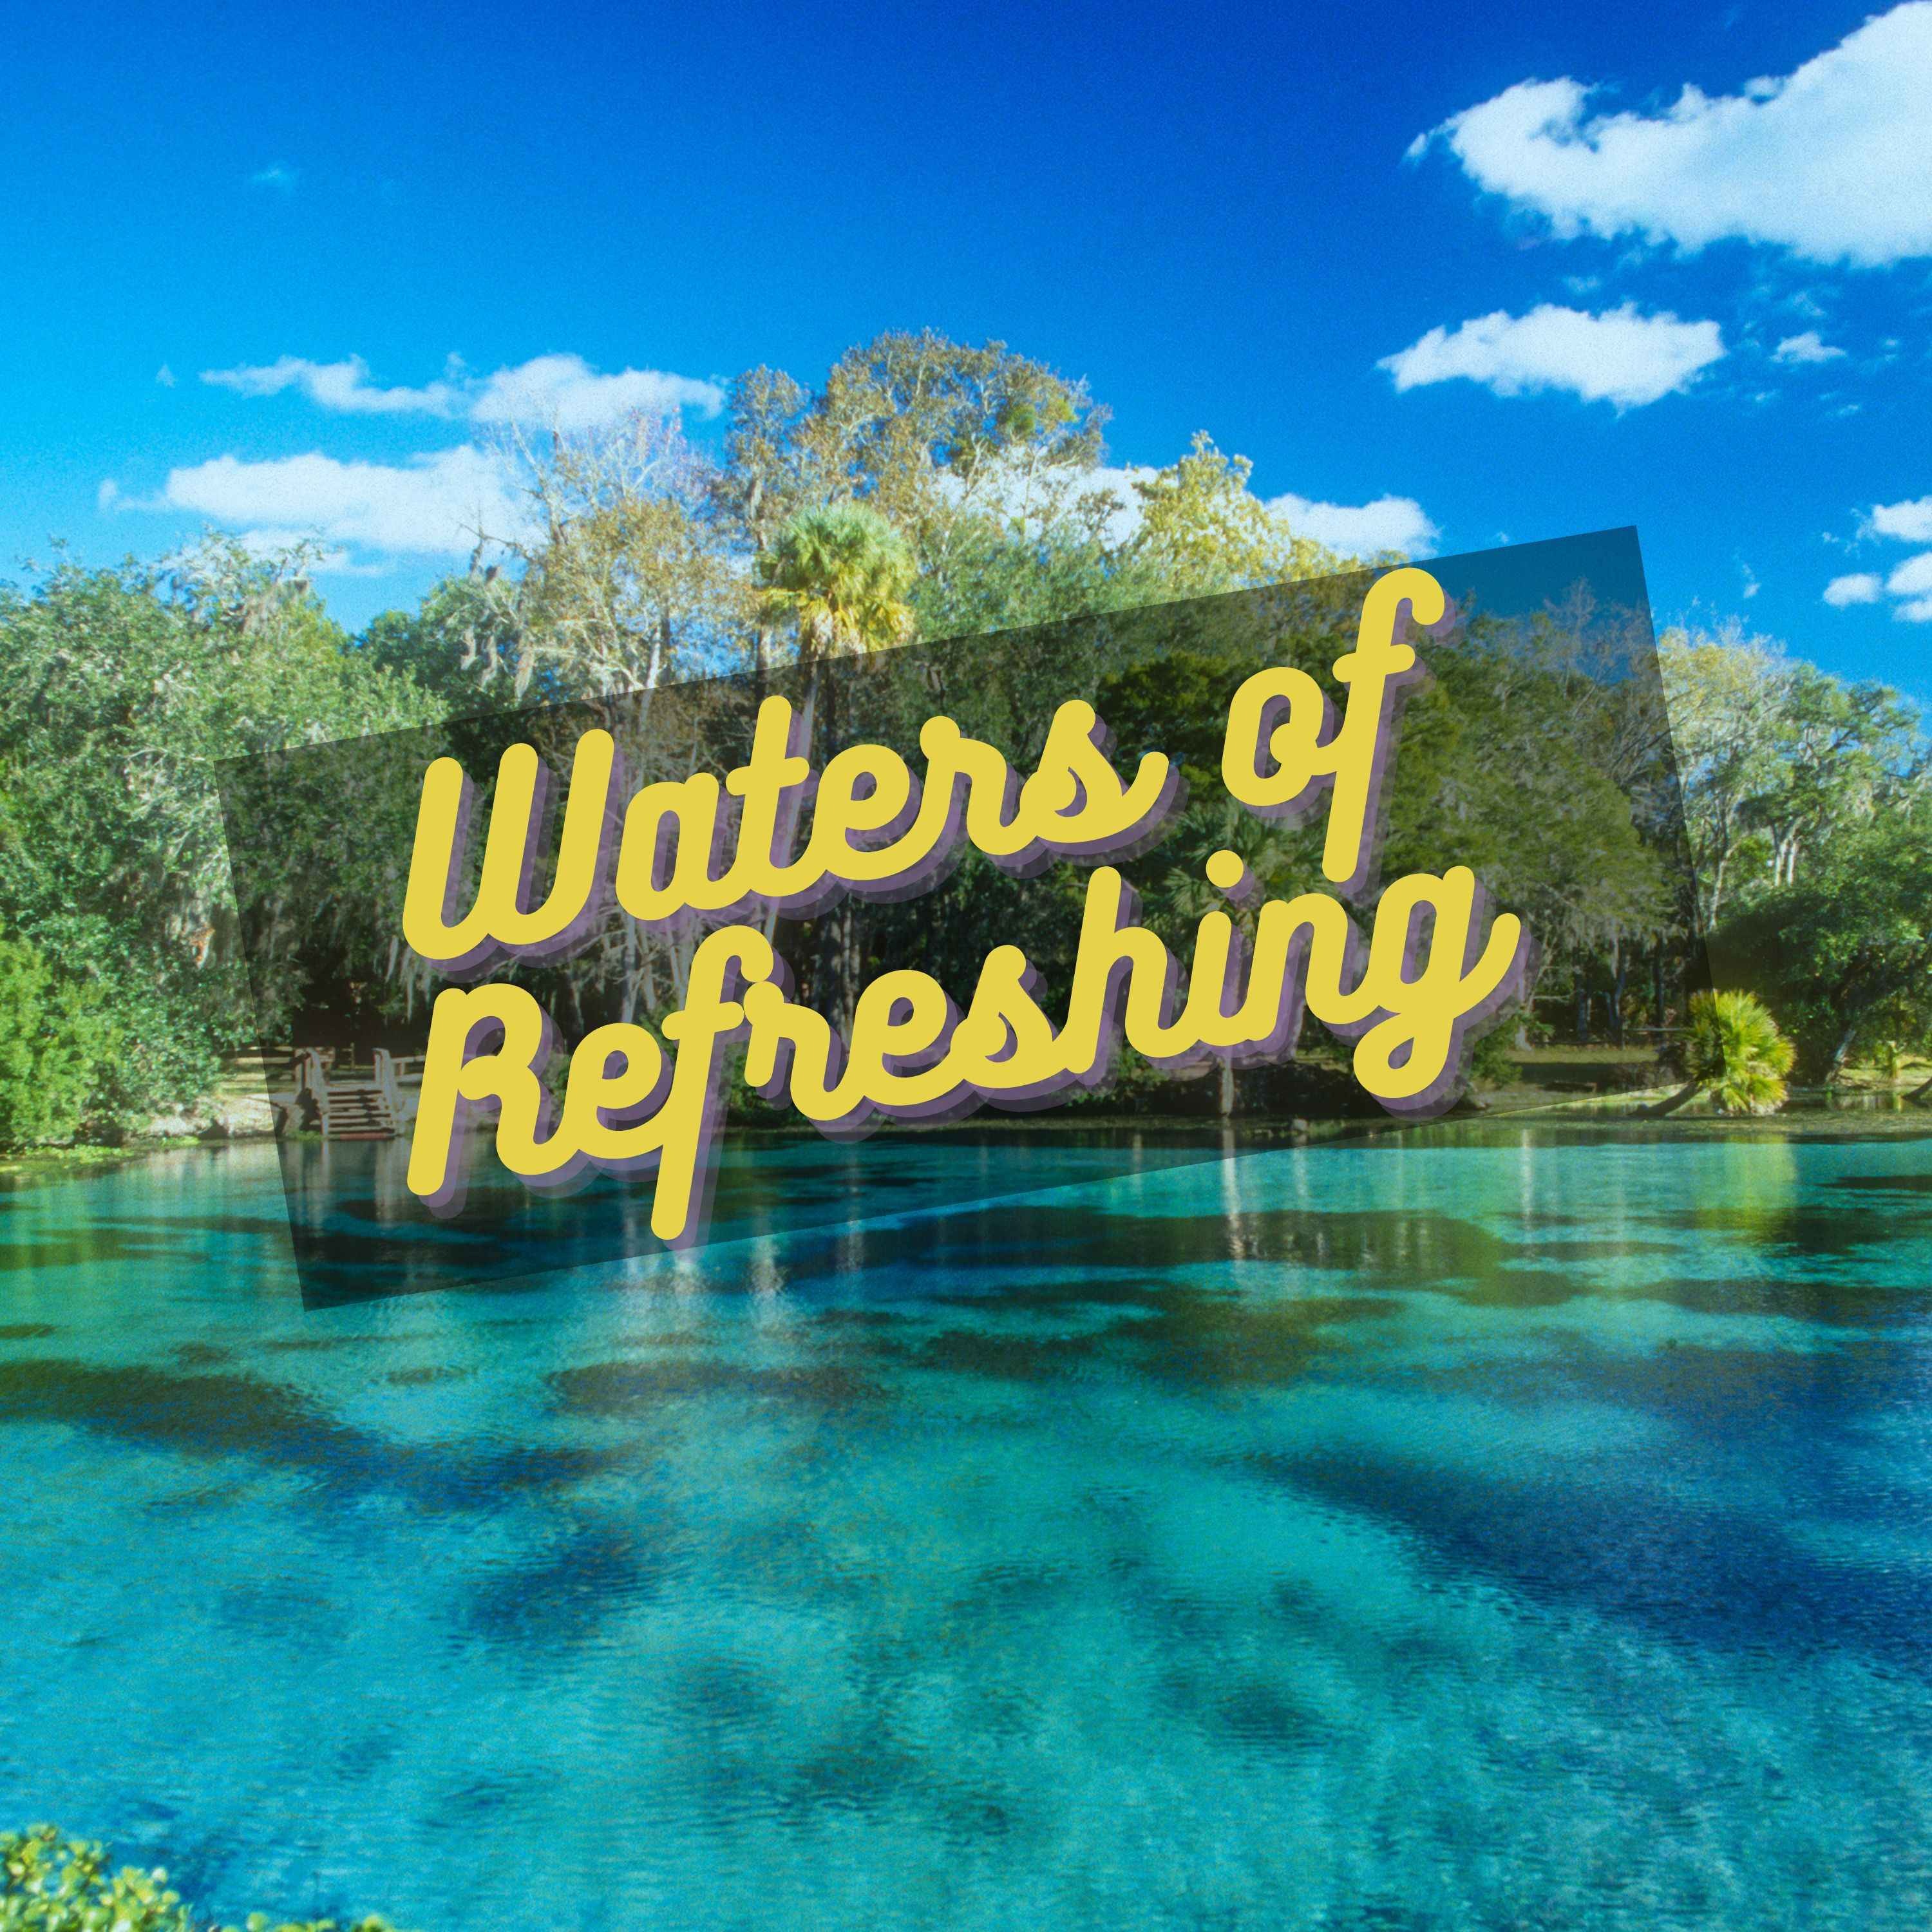 Waters of Refreshing